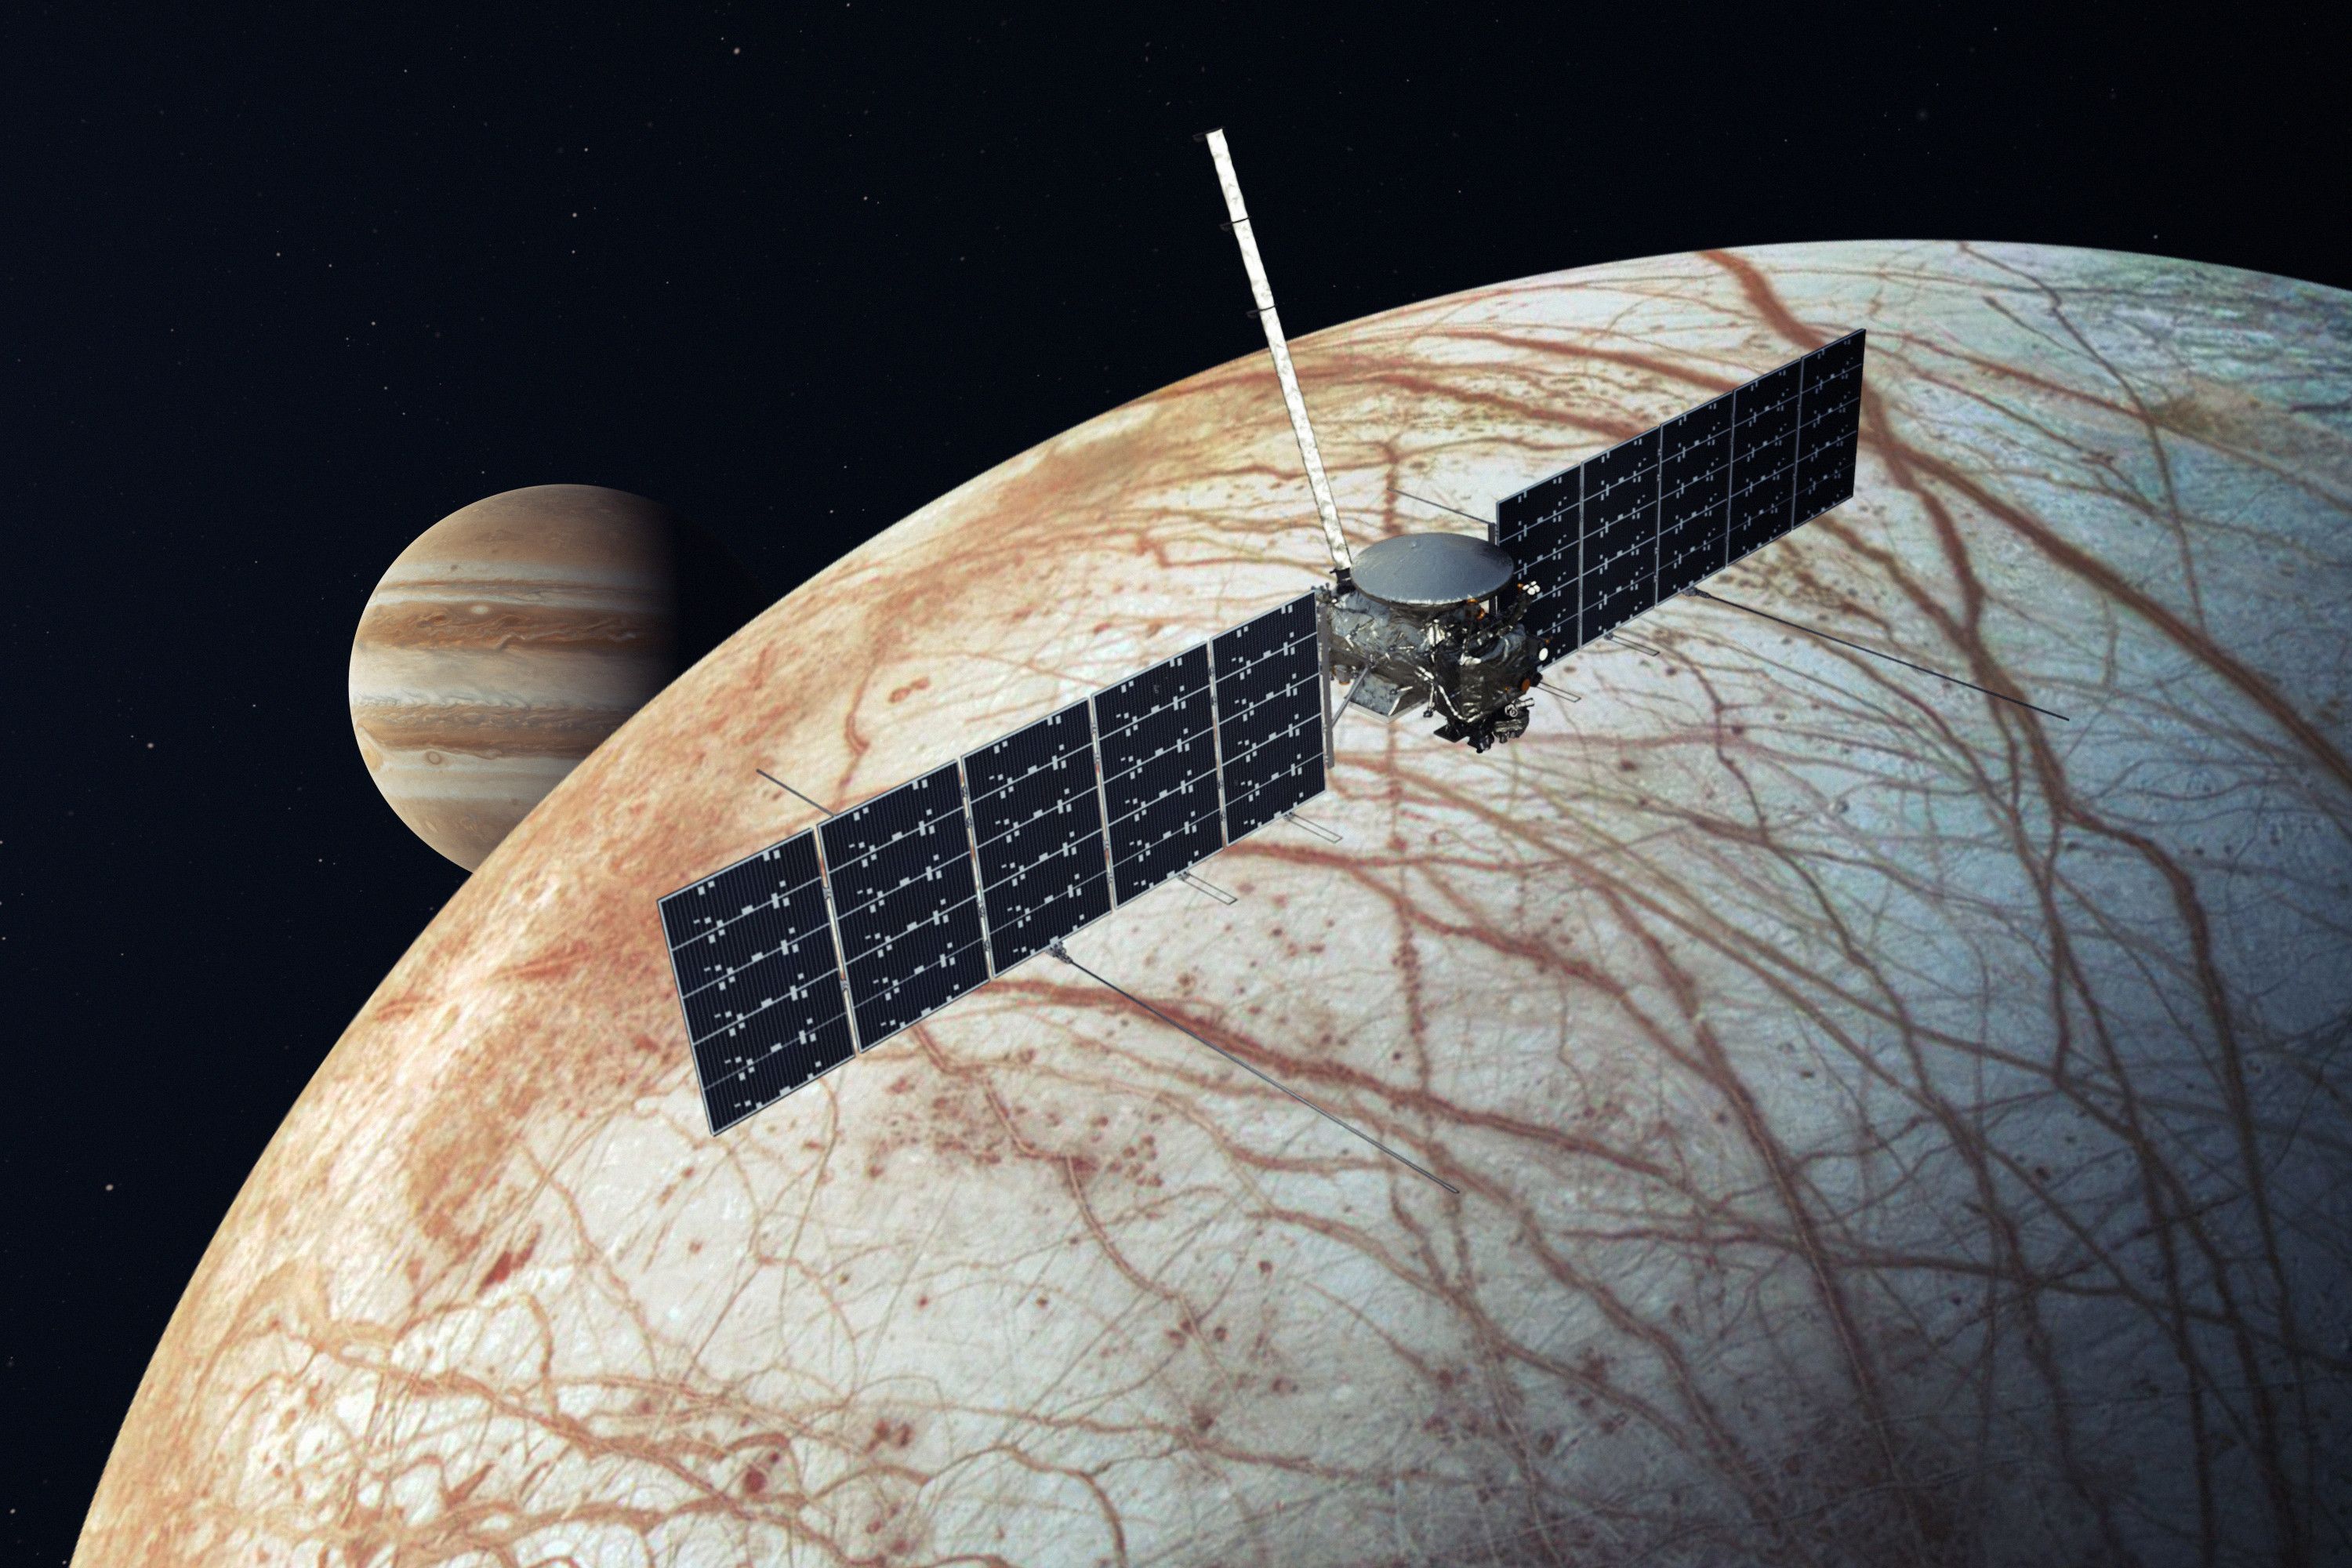 正在开发的木卫二快船任务的概念图显示了一颗卫星在木星和冰冷的卫星木卫二旁边